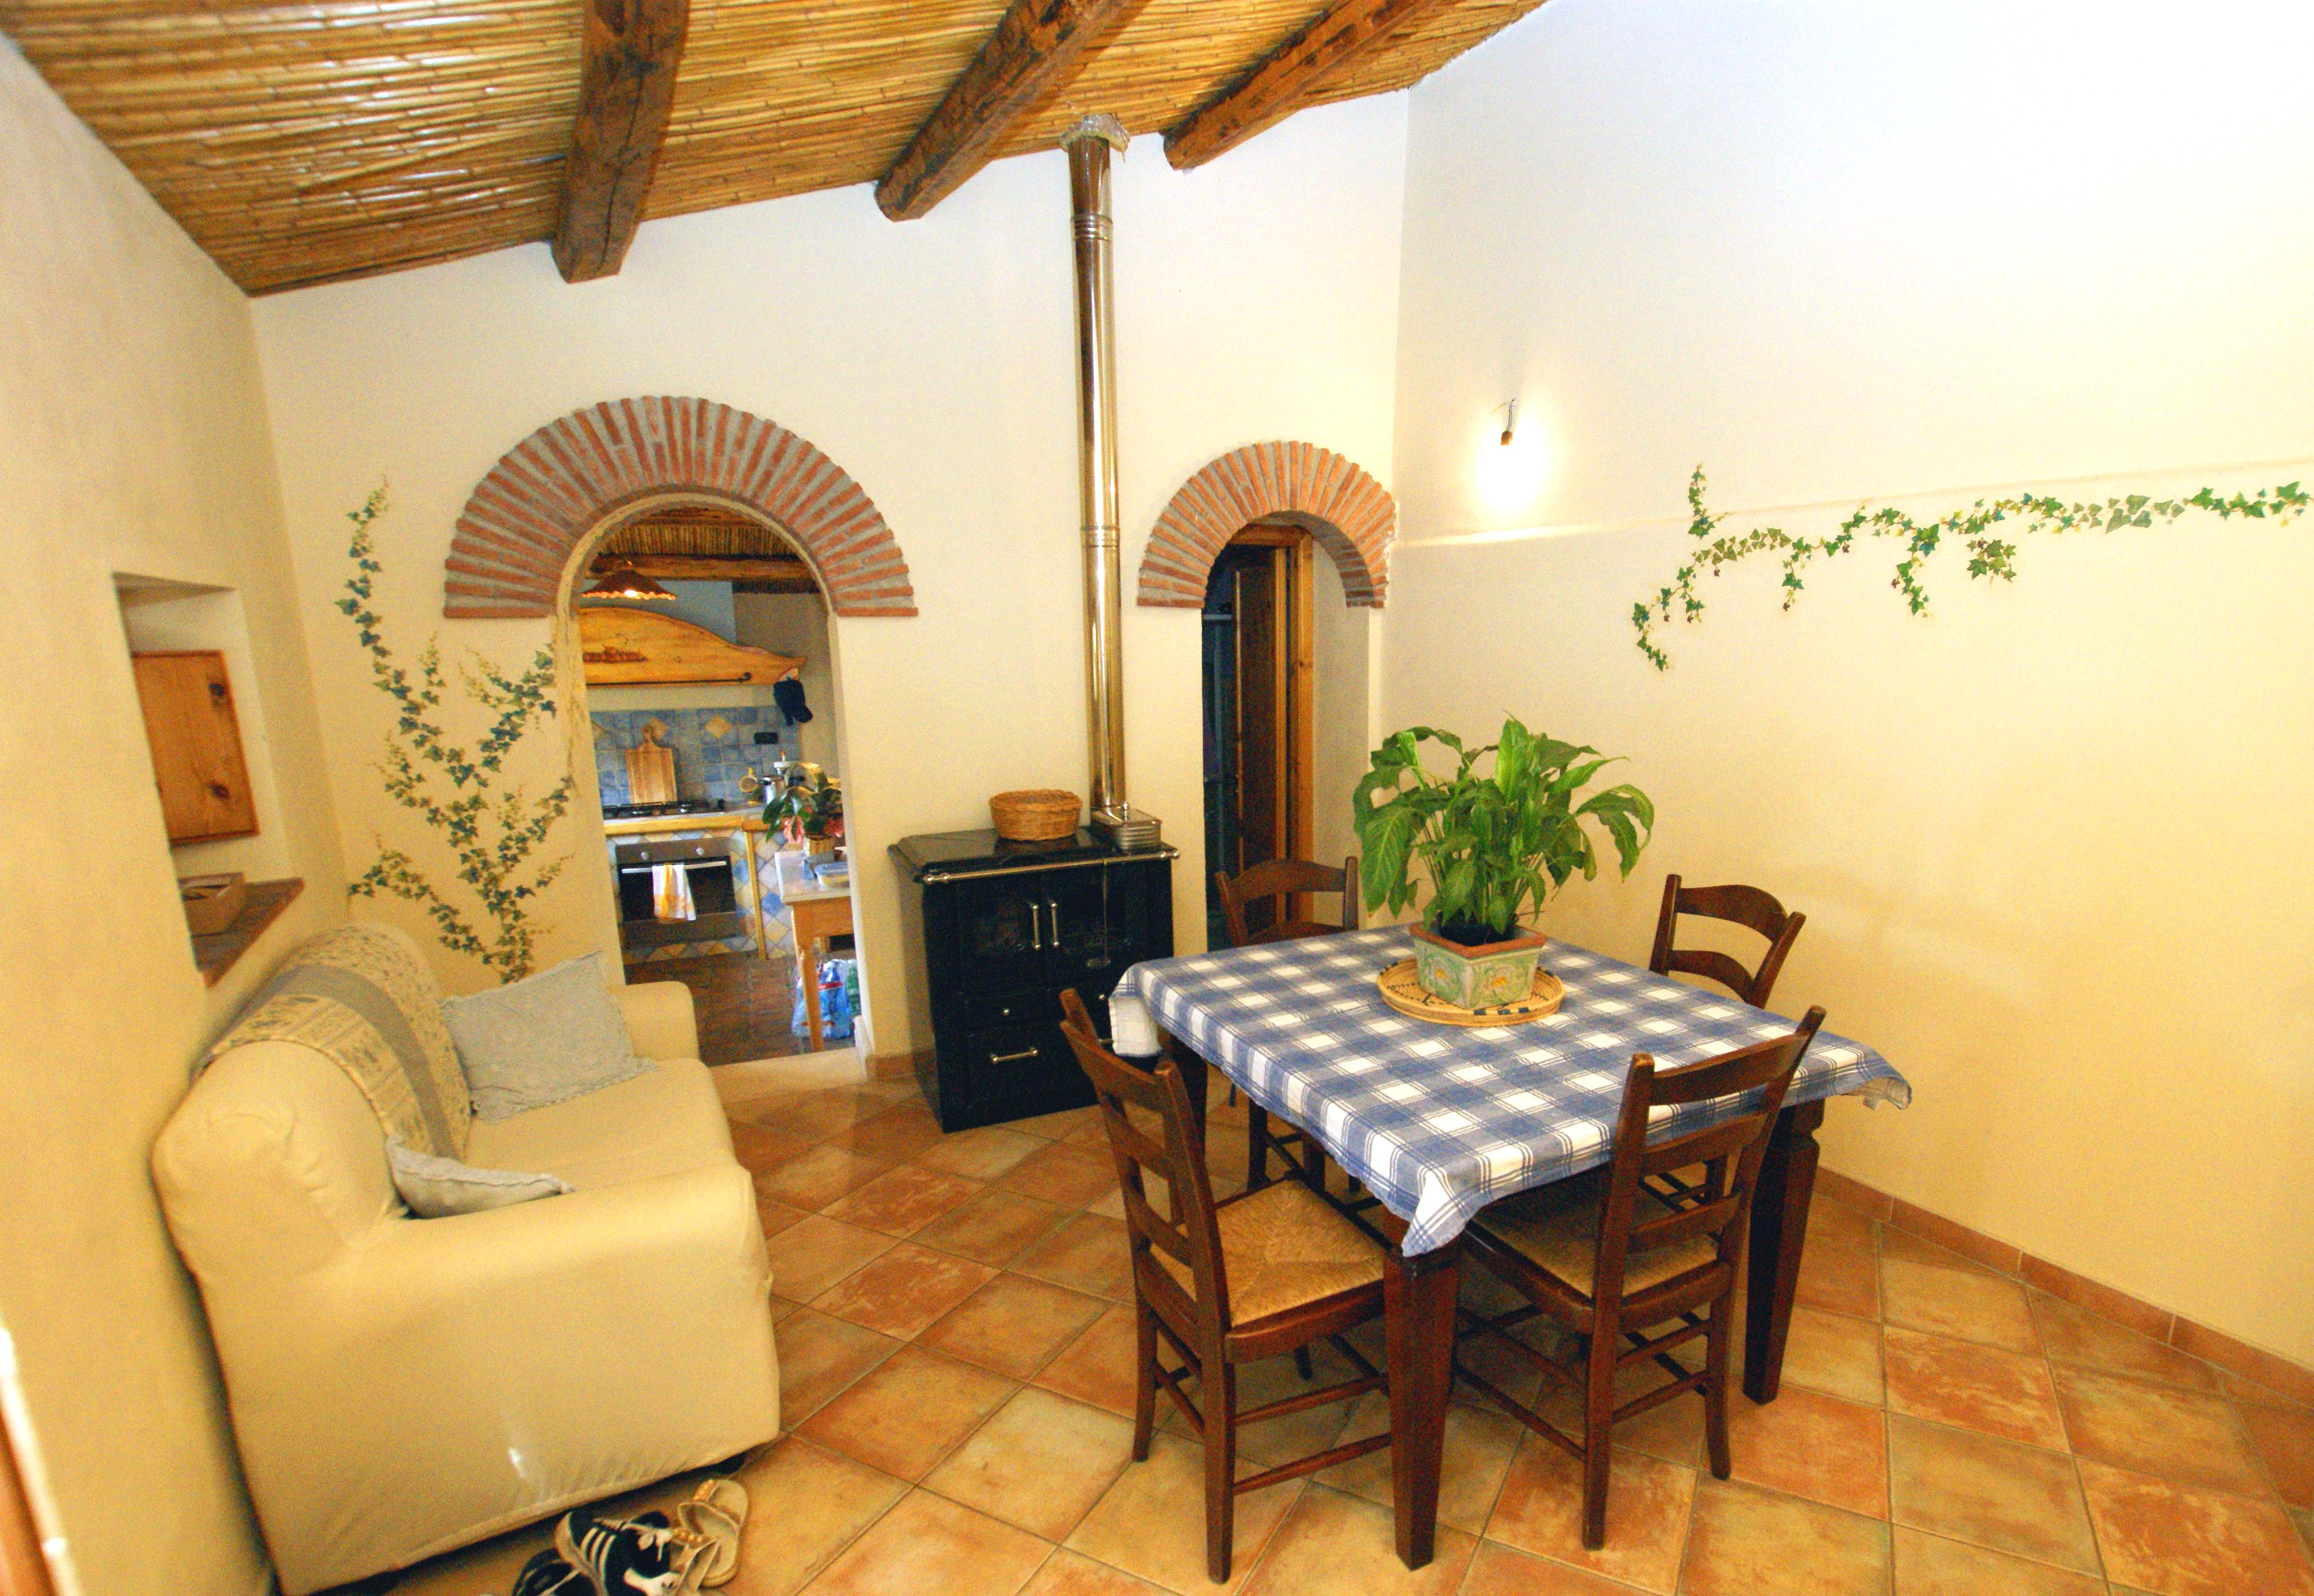 Casa-oliveto-wohnzimmer